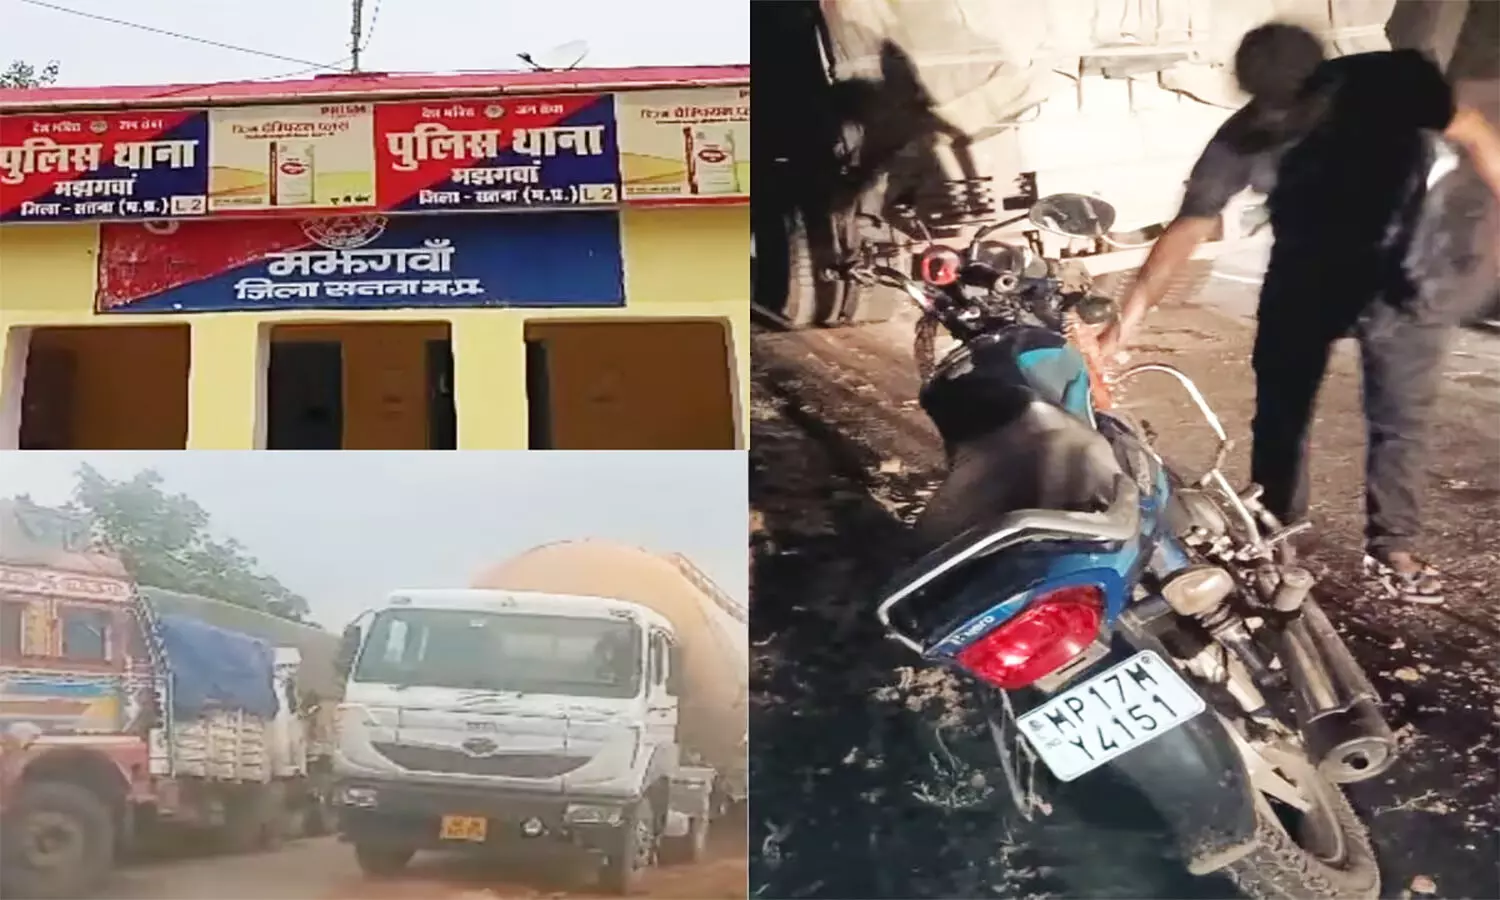 Satna Bike Truck Accident: एमपी के सतना-चित्रकूट मार्ग में खड़े ट्रक से टकरा गई बाइक, तीन लोगों की दर्दनाक मौत